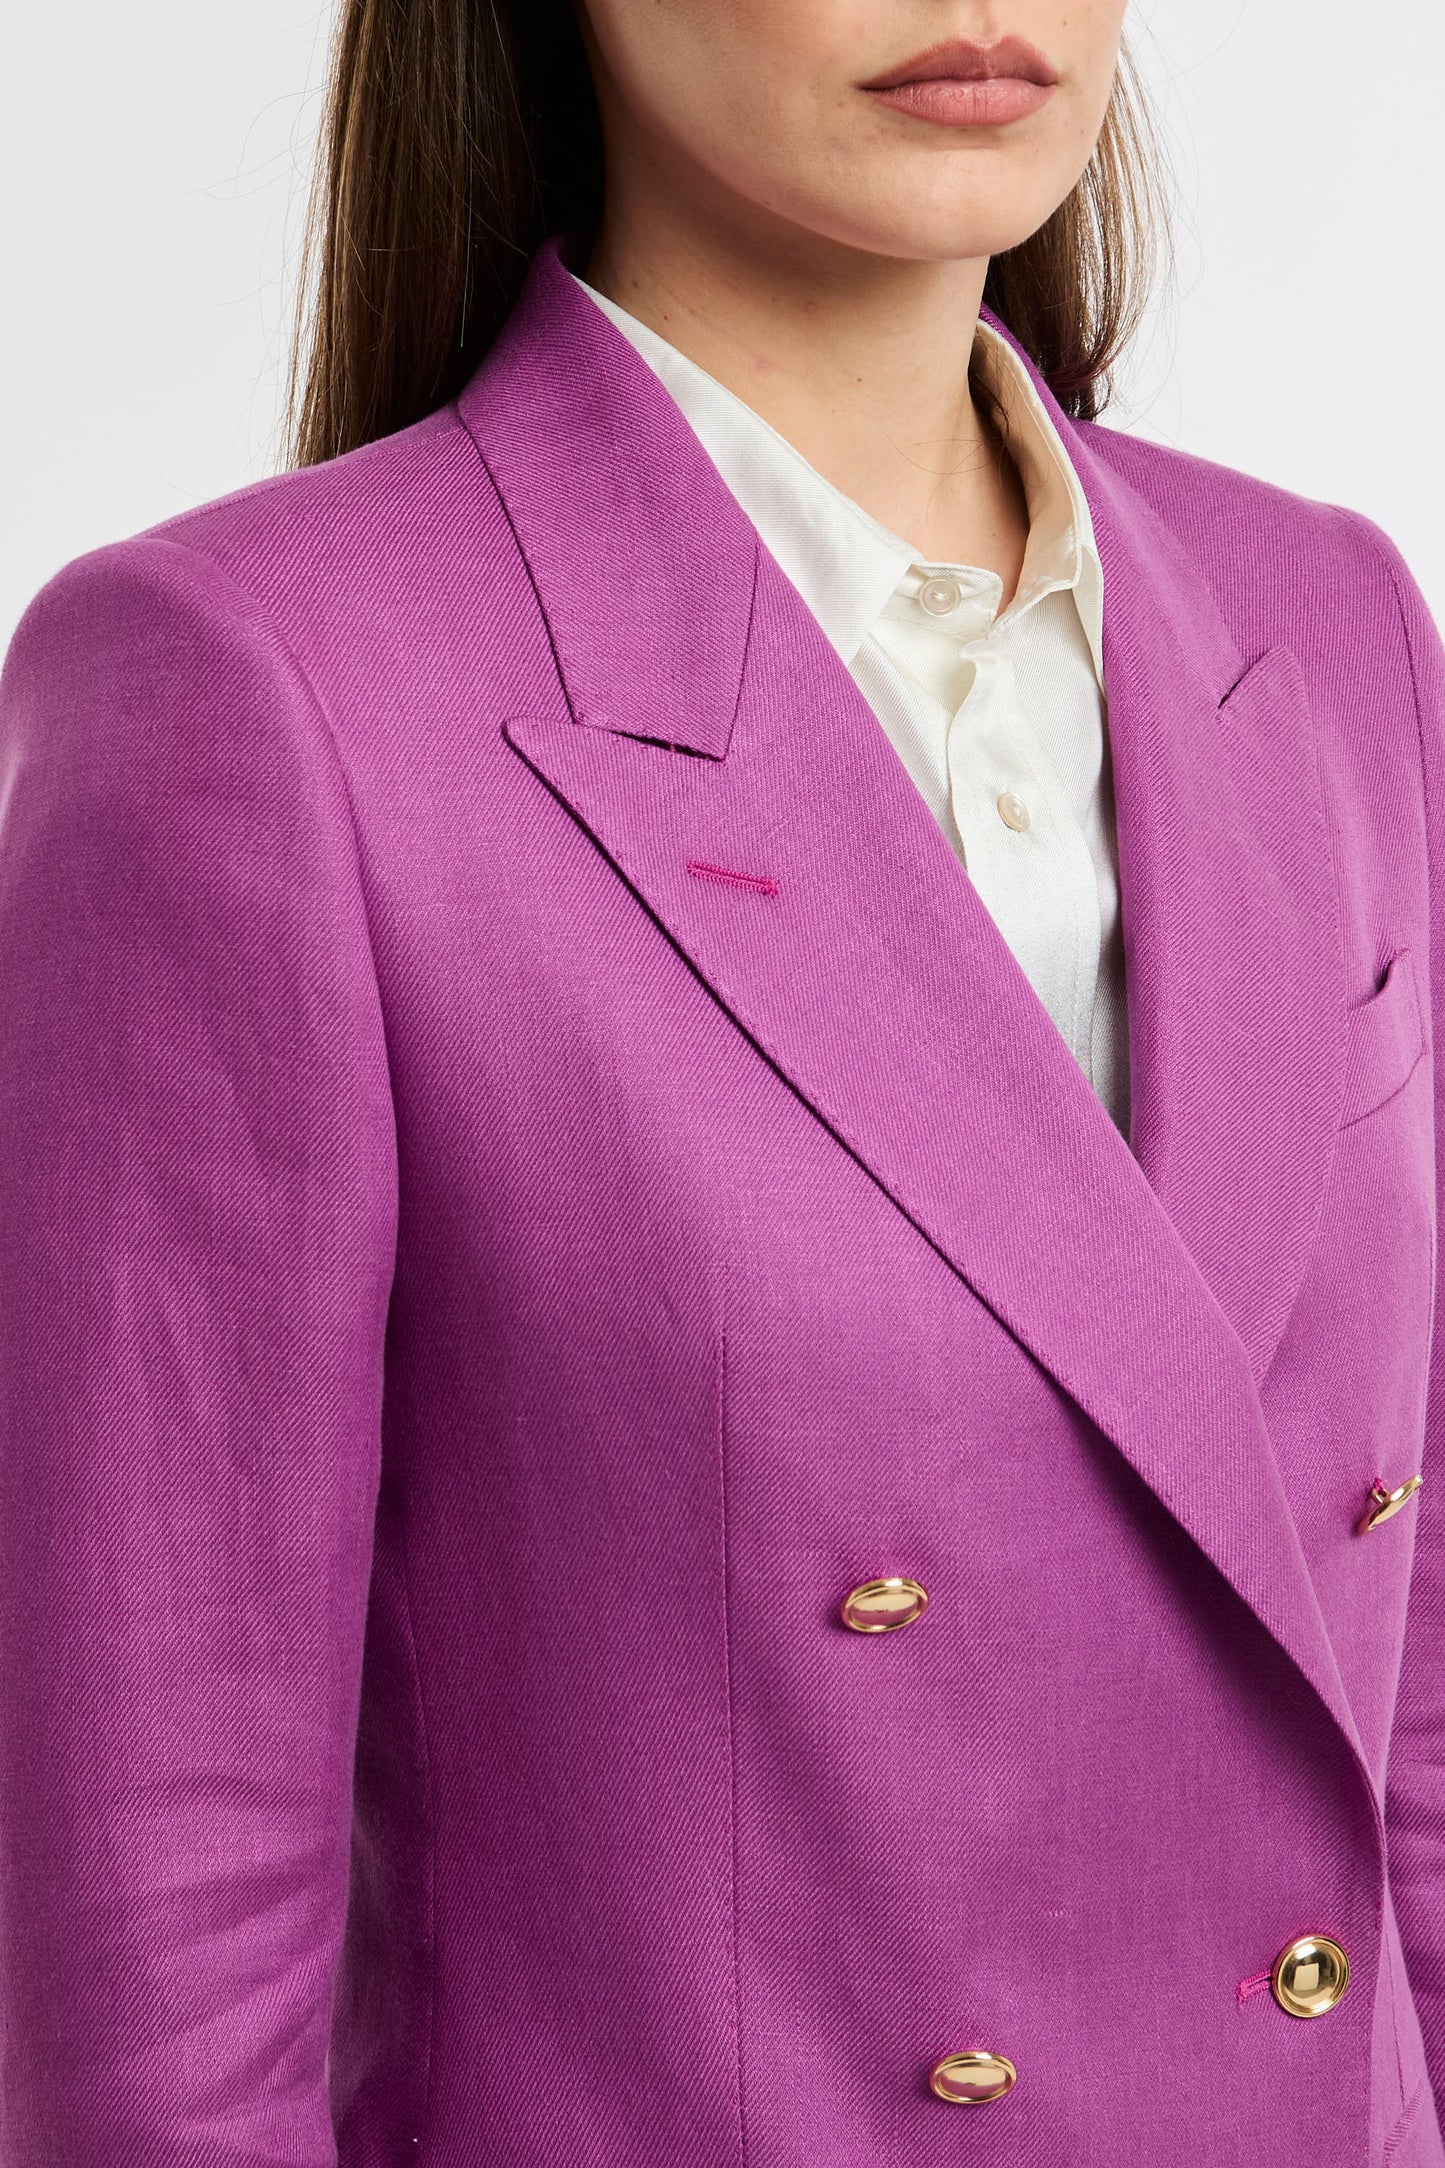  Tagliatore 0205 Single-breasted Jacket 100% Li Multicolor Rosa Donna - 6